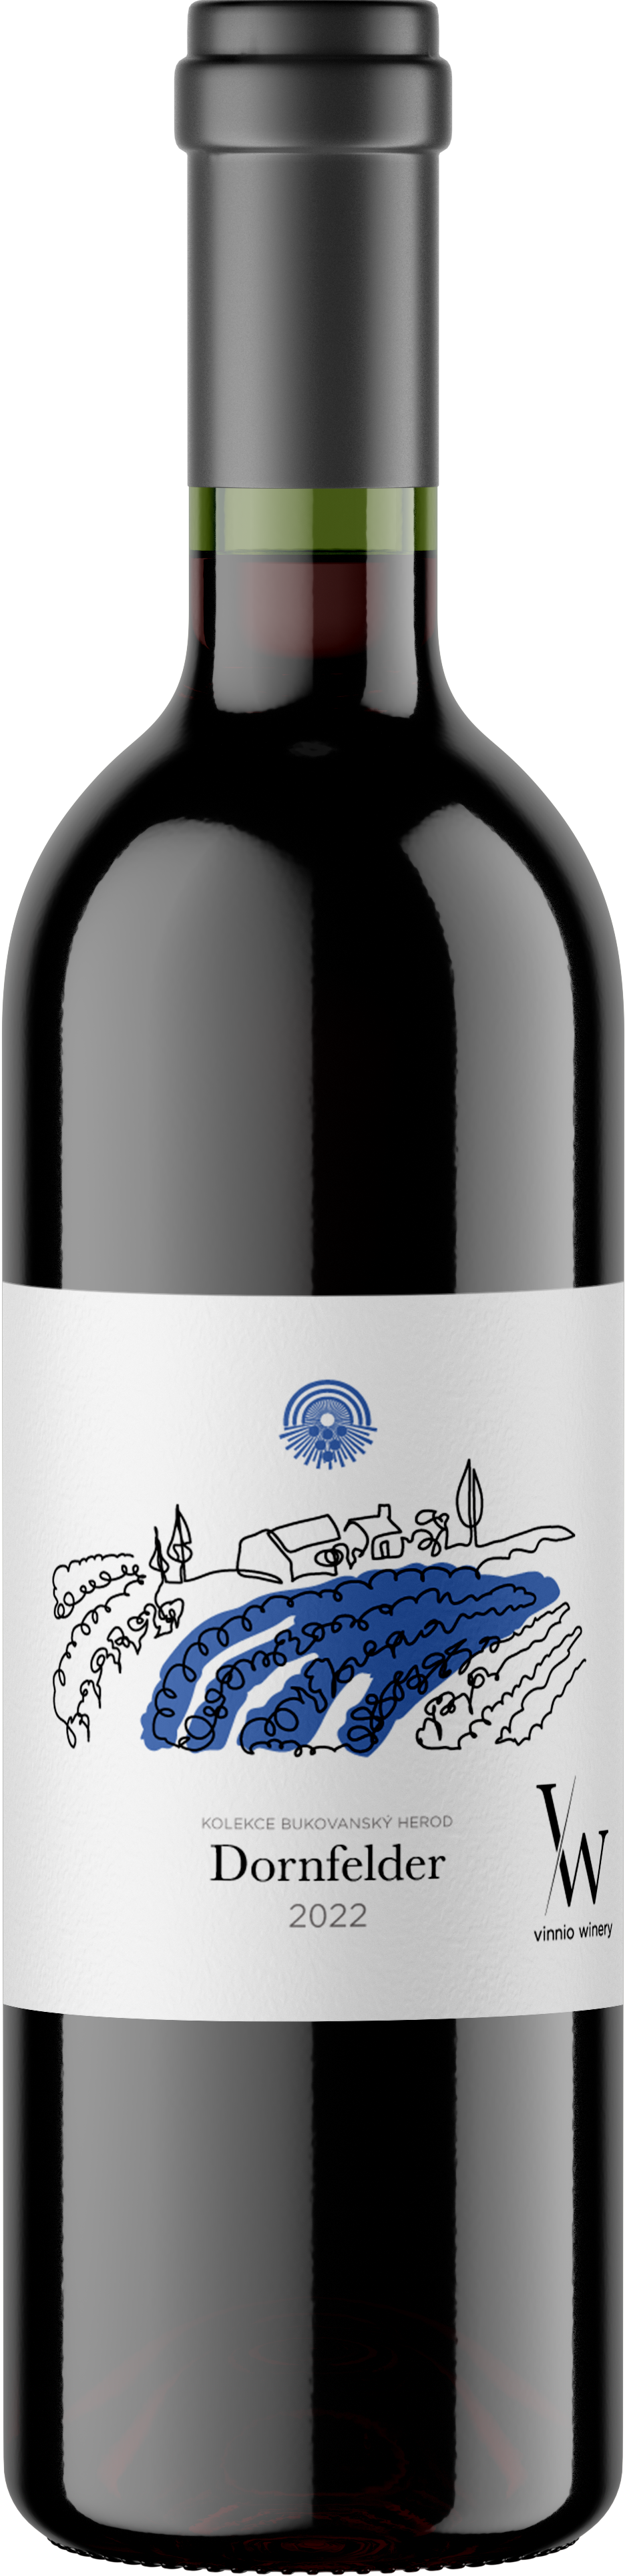 Vinnio Winery - Dornfelder 2022